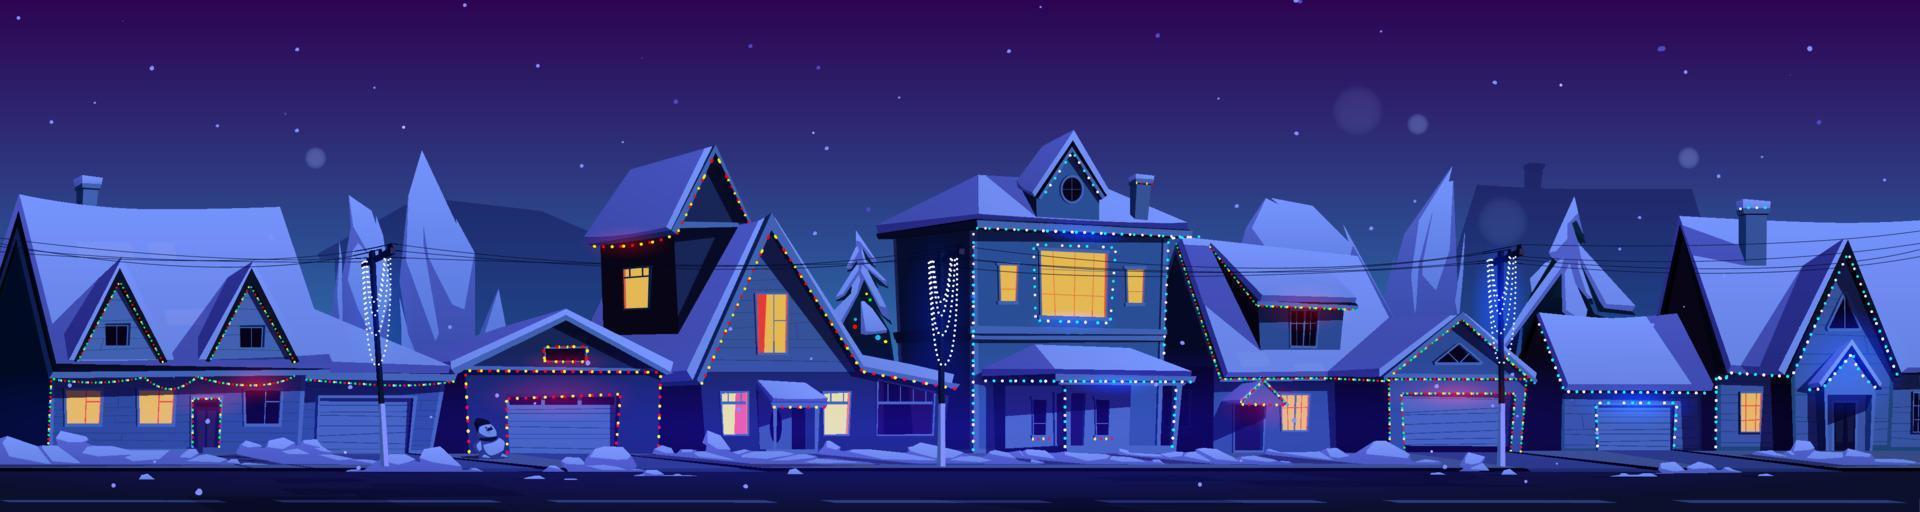 bostads- hus med jul dekoration vektor